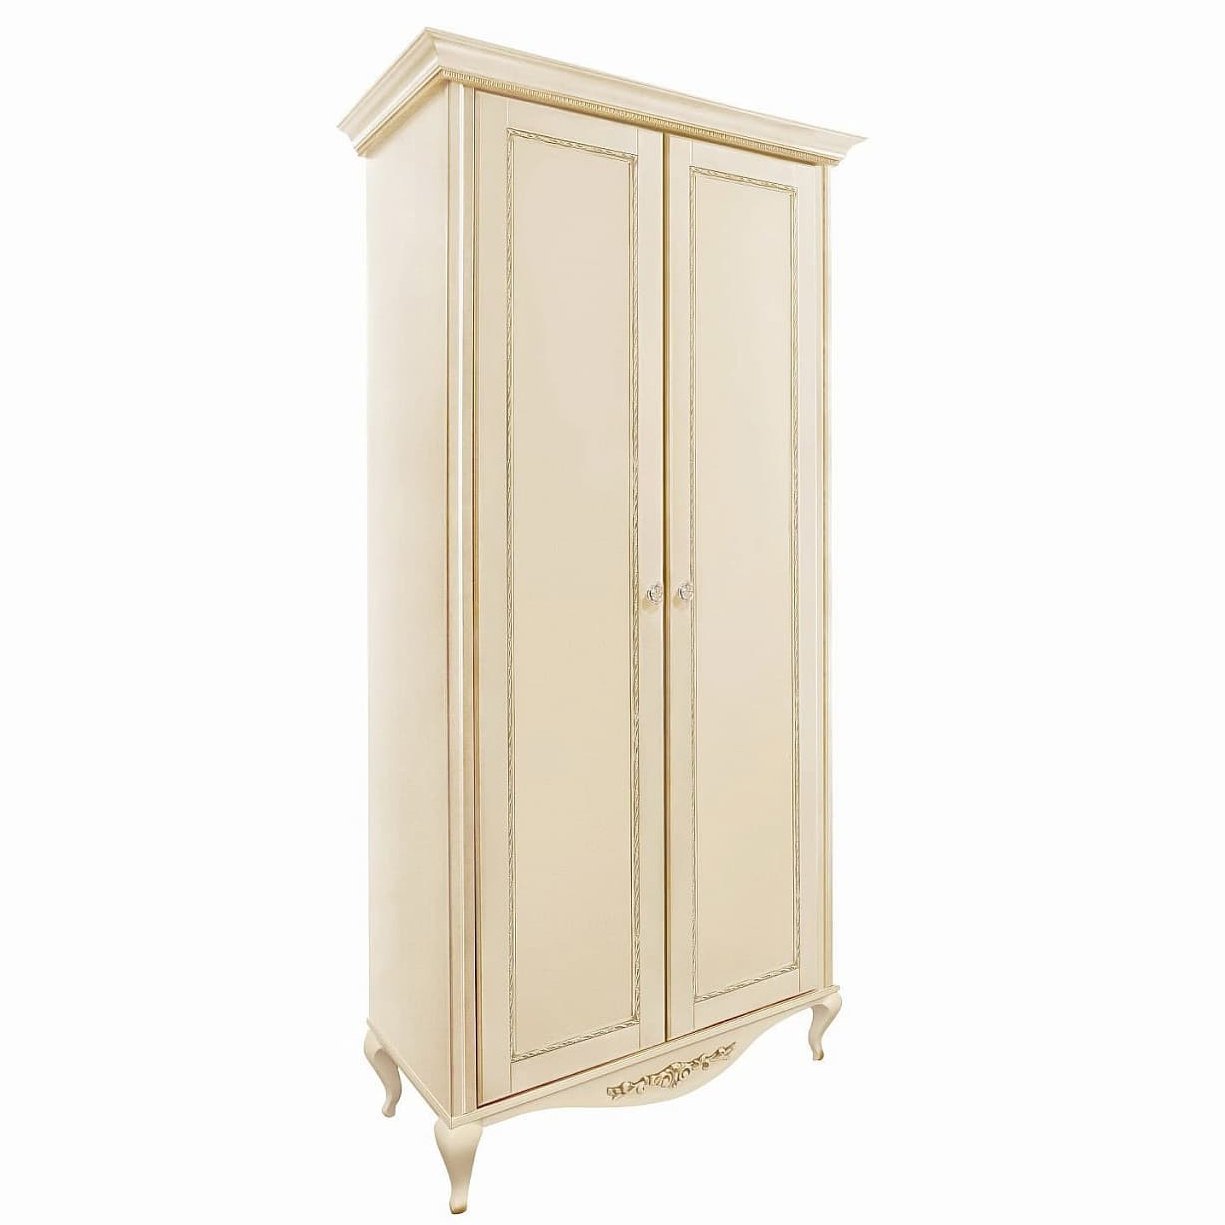 Шкаф платяной Timber Неаполь, 2-х дверный 114x65x227 см, цвет: ваниль с золотом (Т-522/VO)Т-522